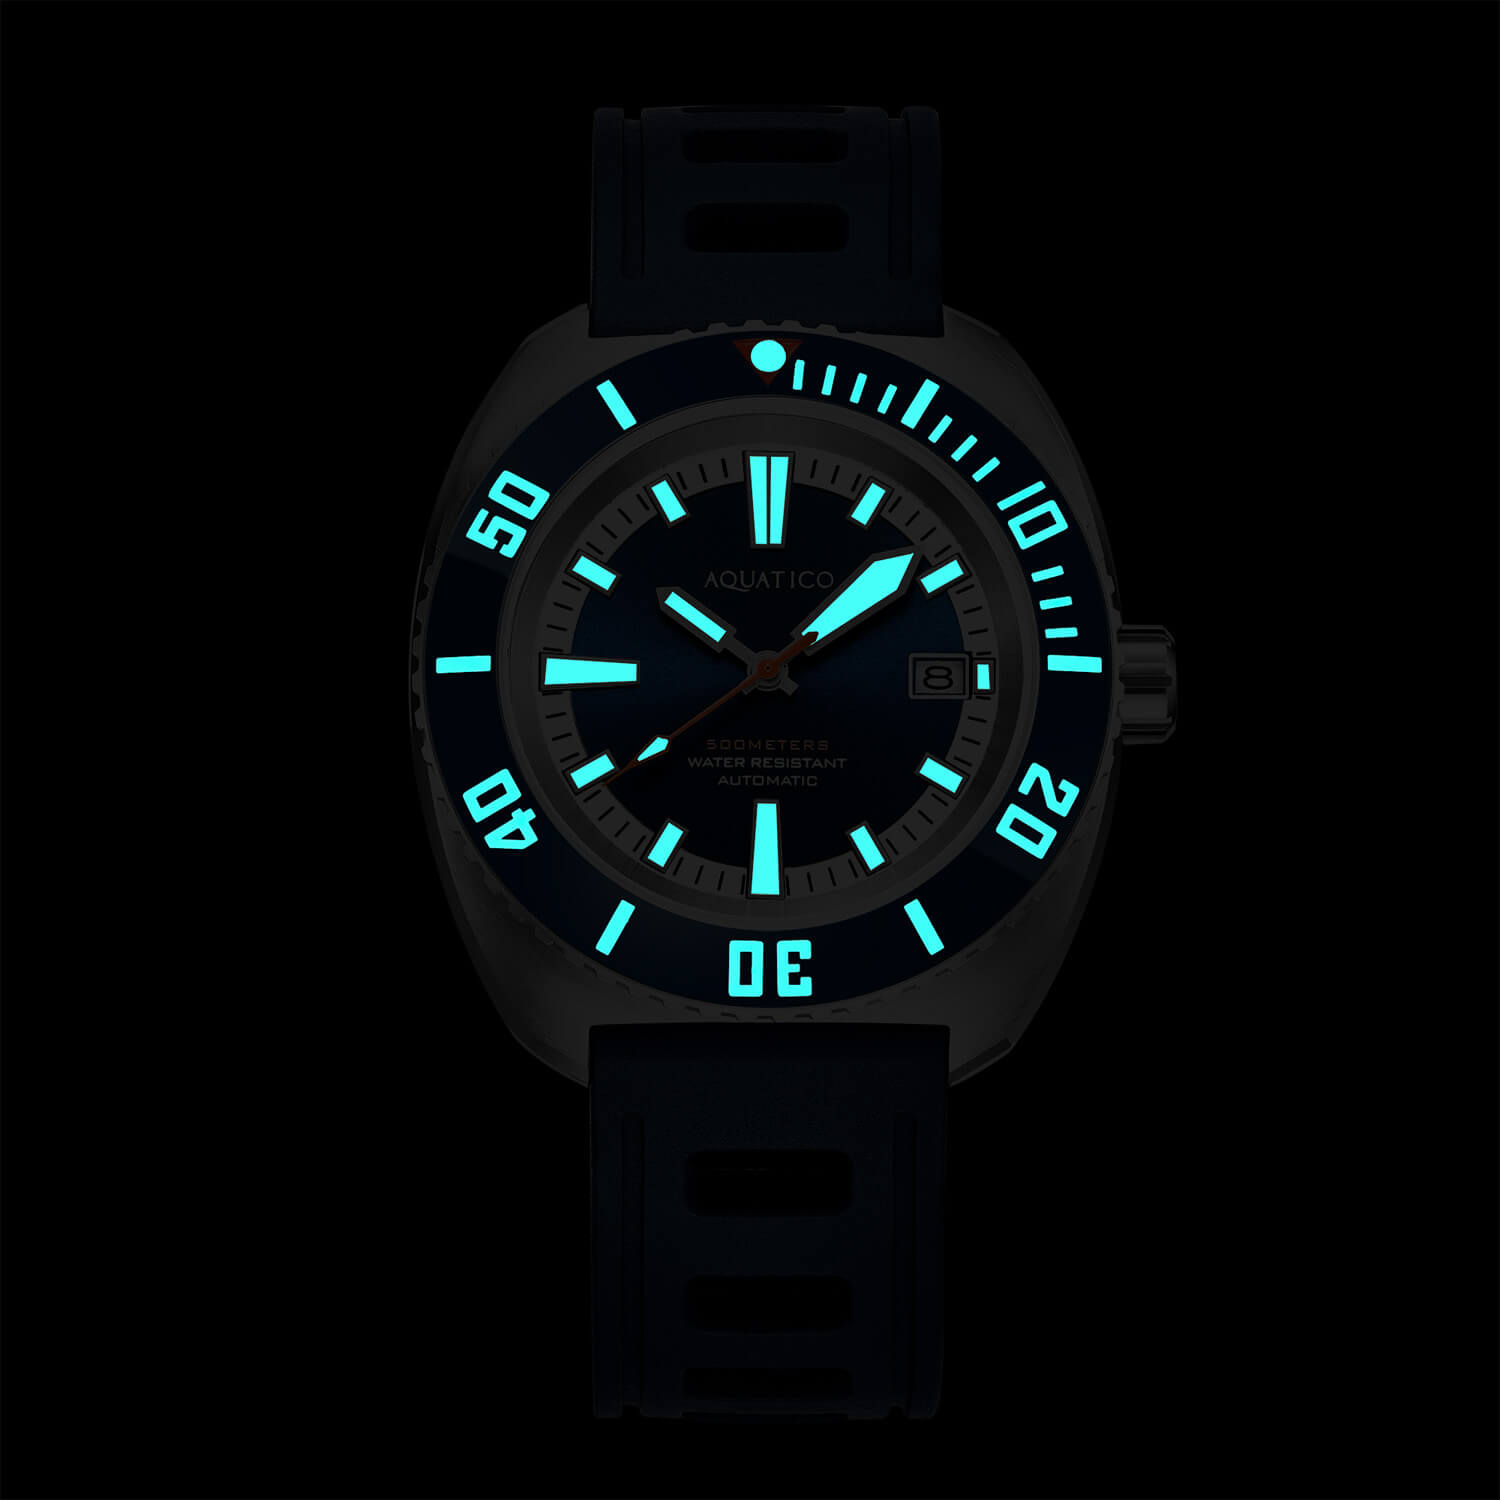 Aquatico Oyster 44mm Automatic Men's Diver Watch Black Dial/Black Bezel